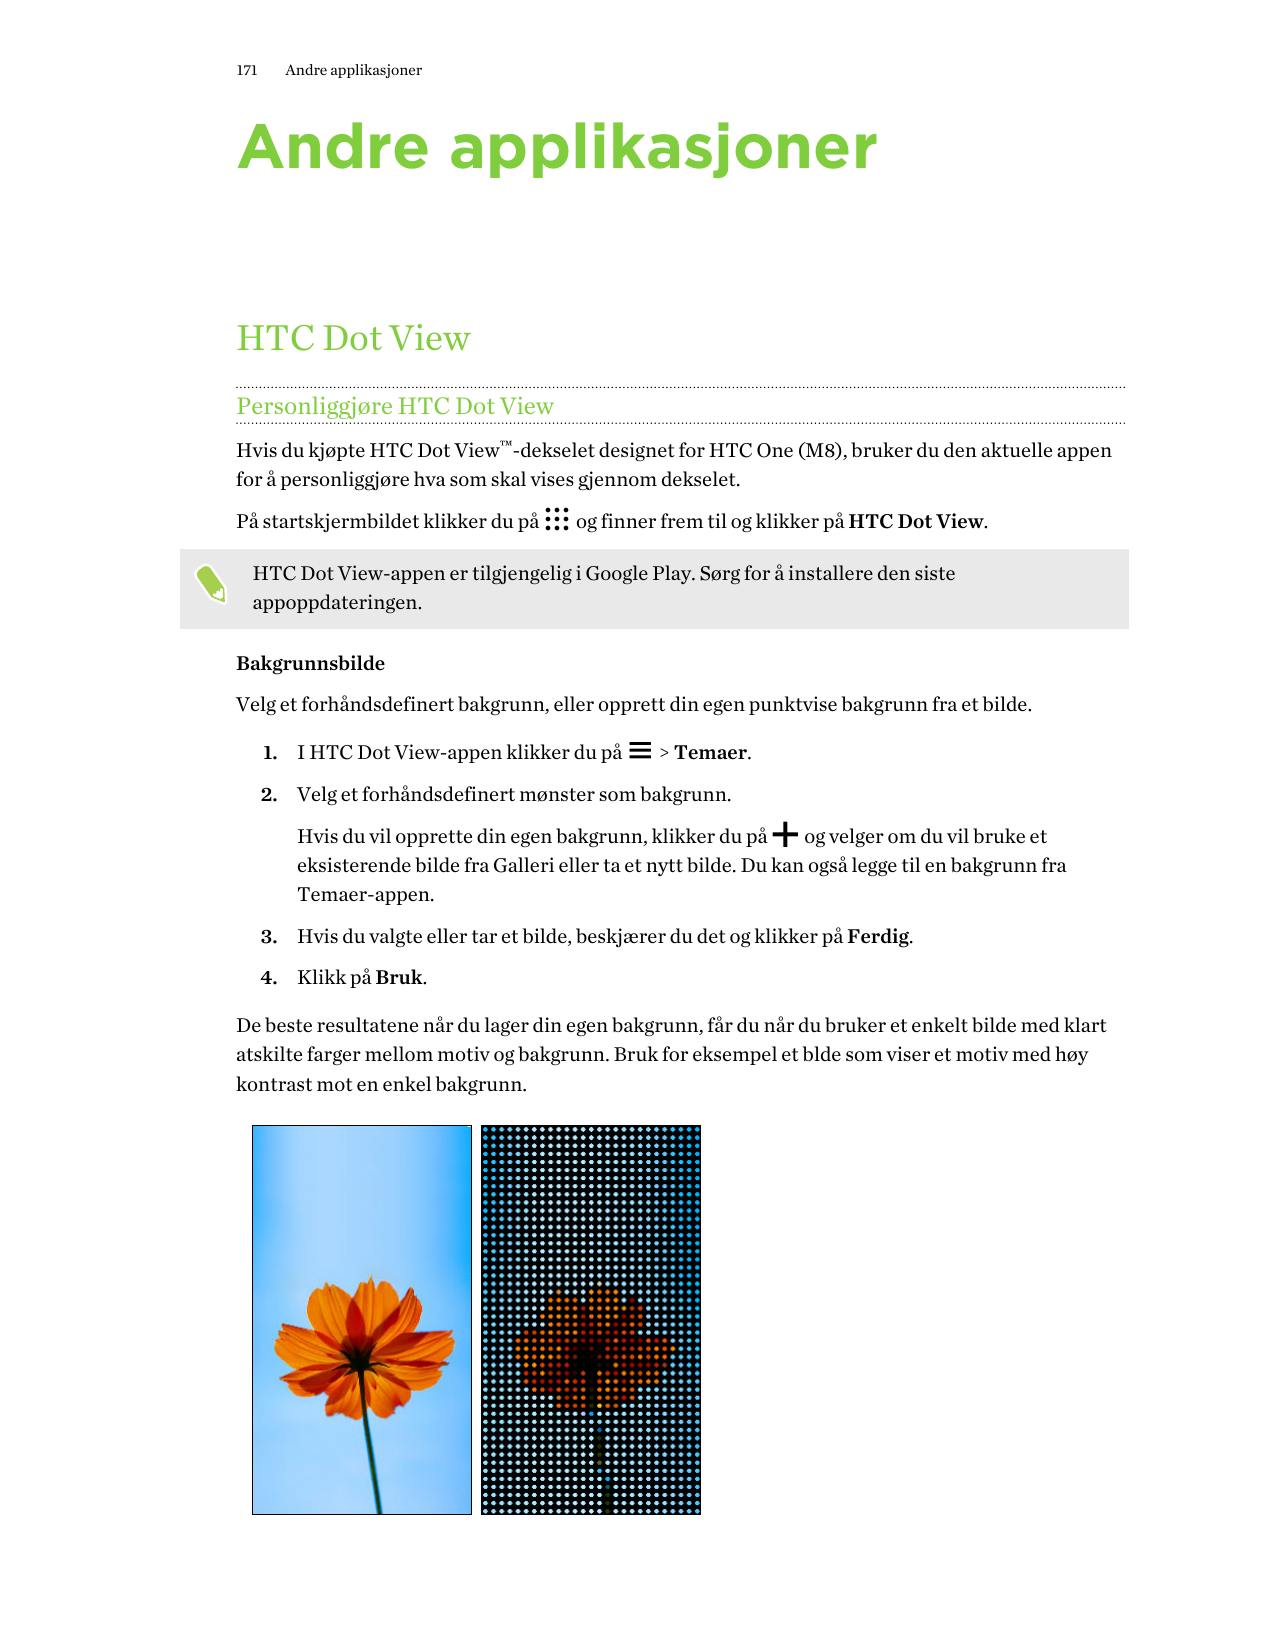 171Andre applikasjonerAndre applikasjonerHTC Dot ViewPersonliggjøre HTC Dot ViewHvis du kjøpte HTC Dot View™-dekselet designet f